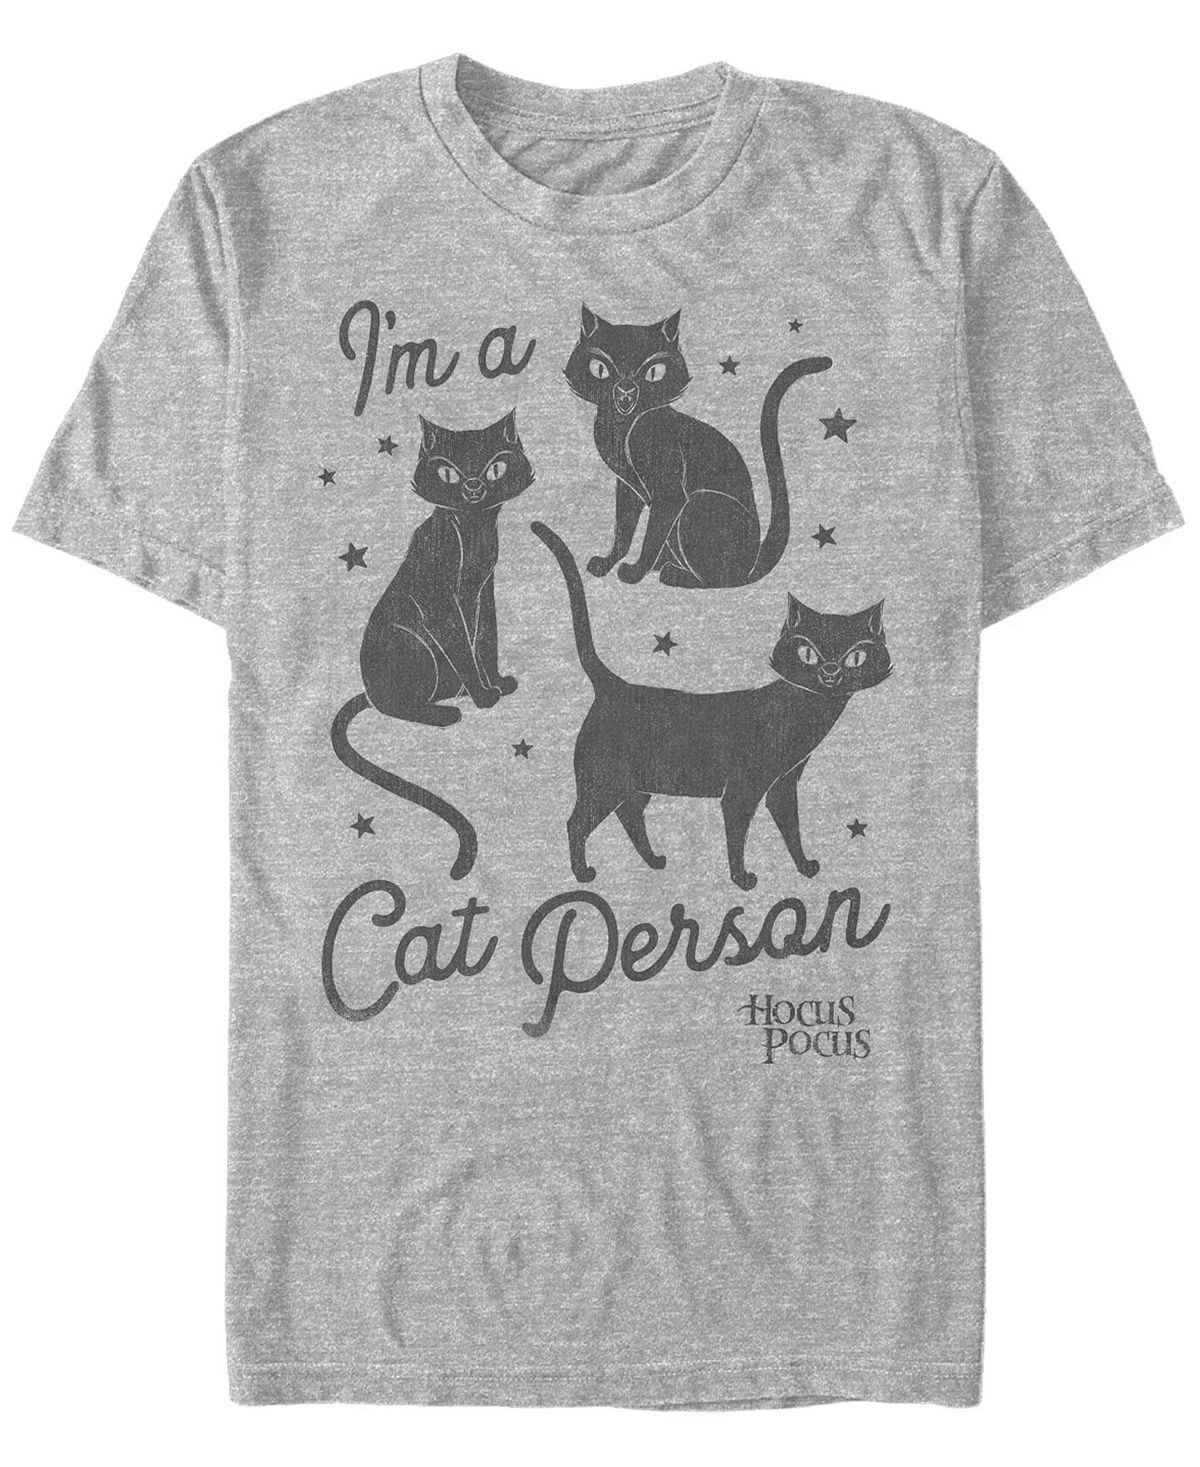 цена Мужская футболка с коротким рукавом hocus pocus cat person Fifth Sun, мульти